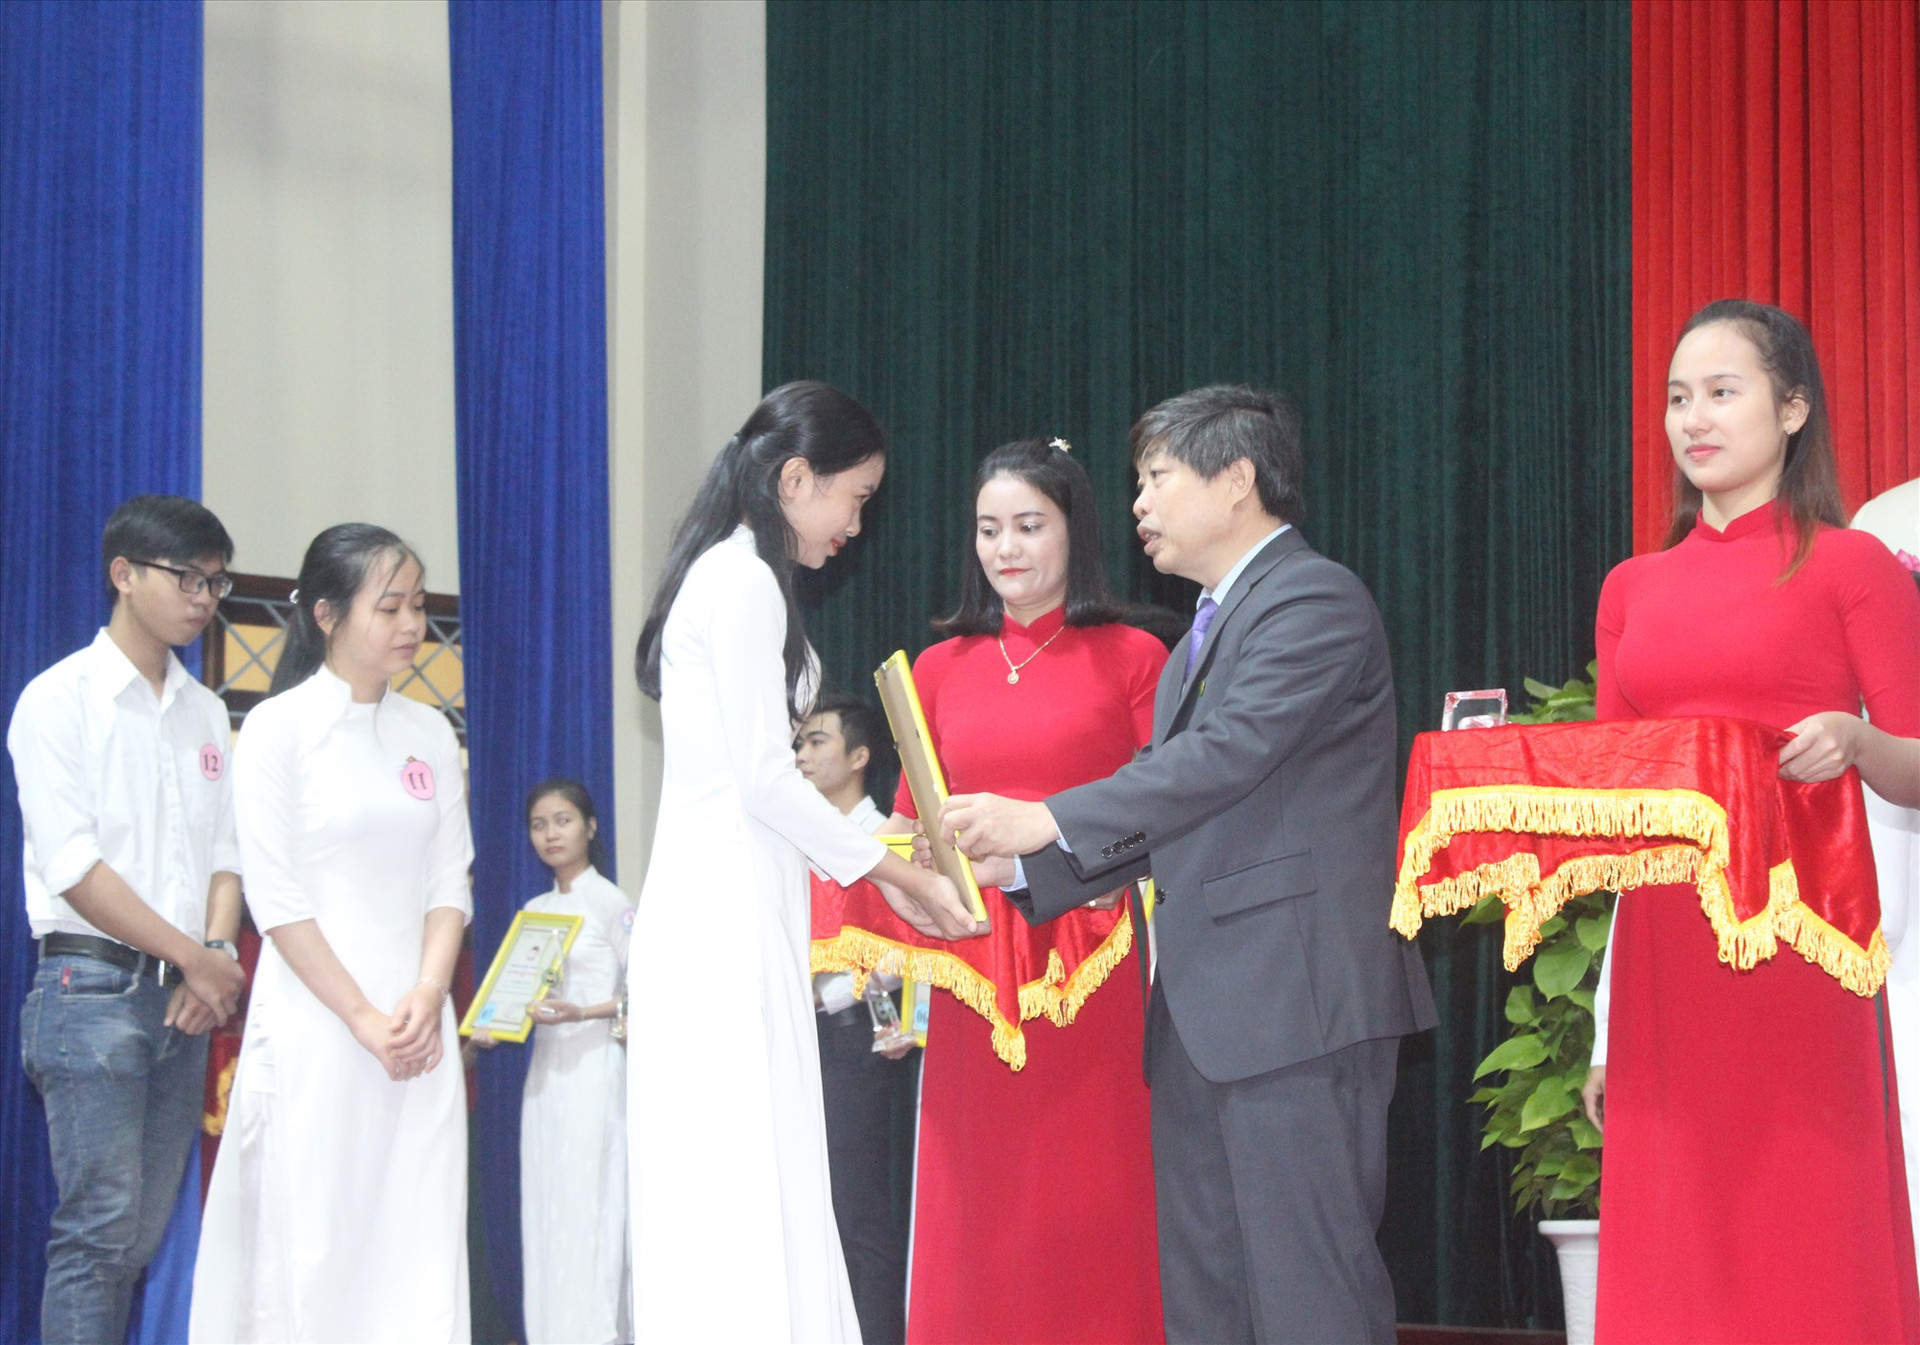 Chủ tịch UBND huyện Tiên Phước Hường Văn Minh trao thưởng cho các sinh viên xuất sắc. Ảnh: D.L